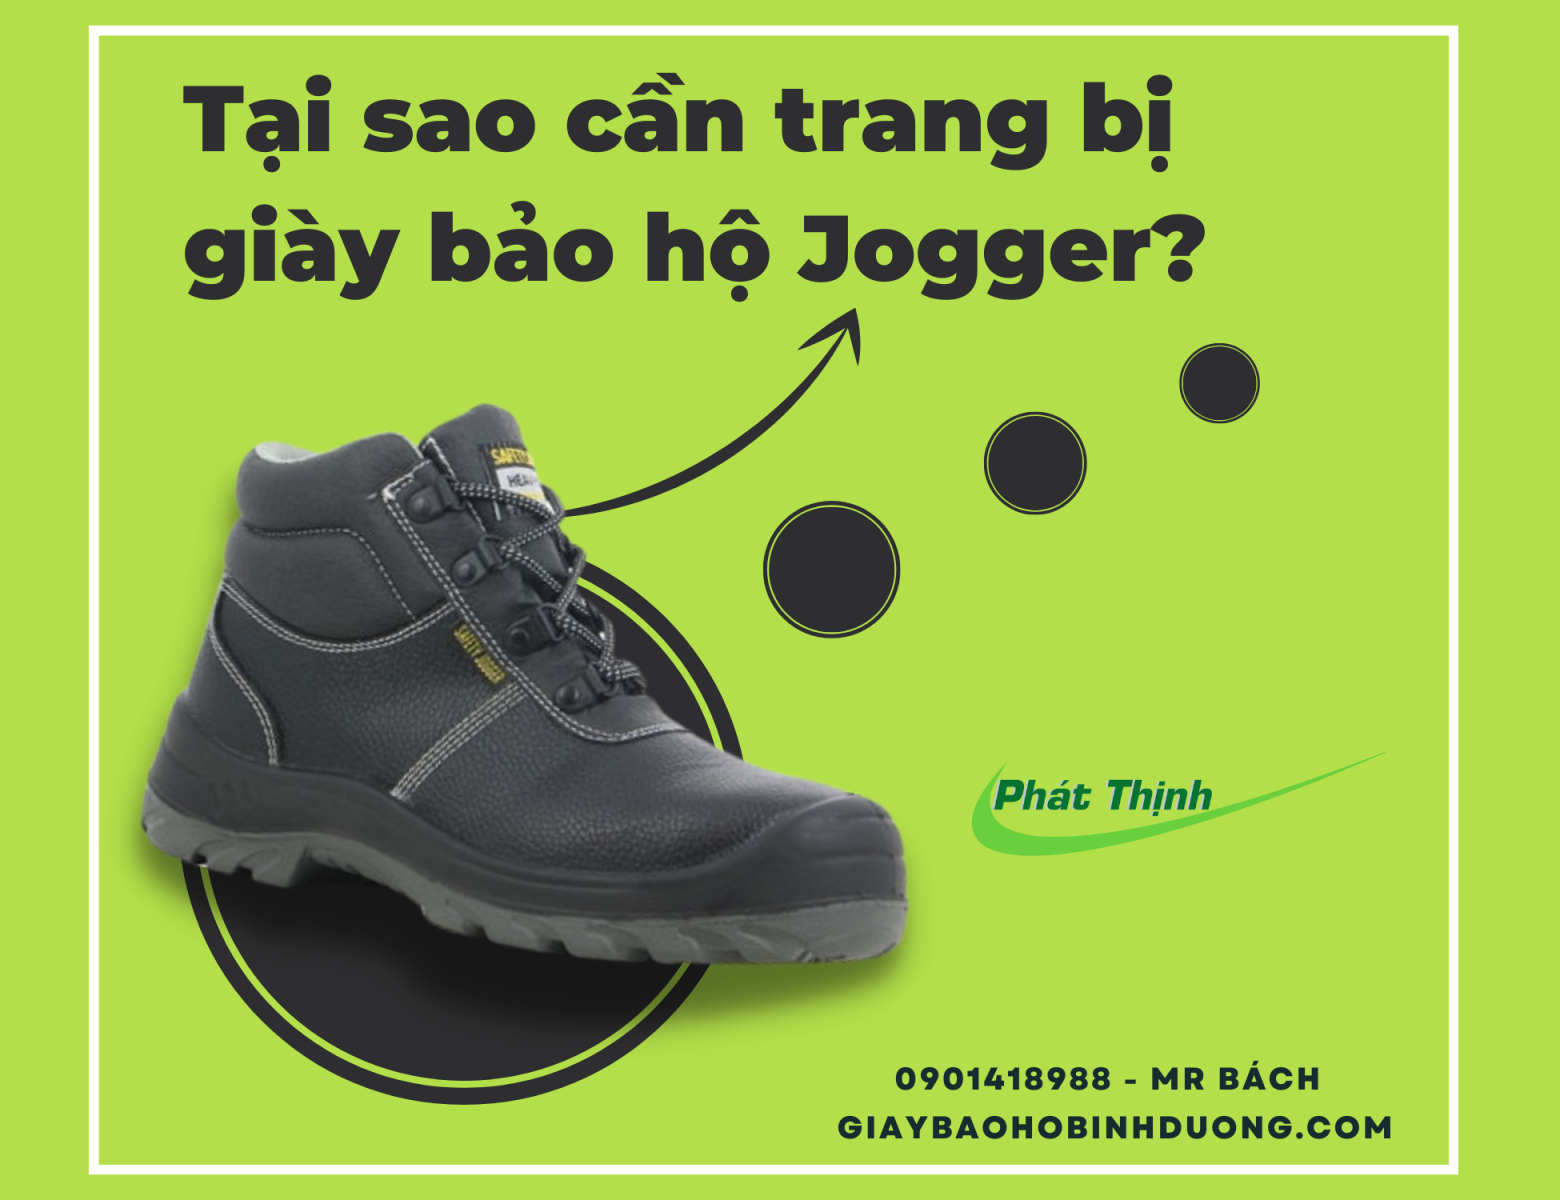 giày bảo hộ lao động Jogger